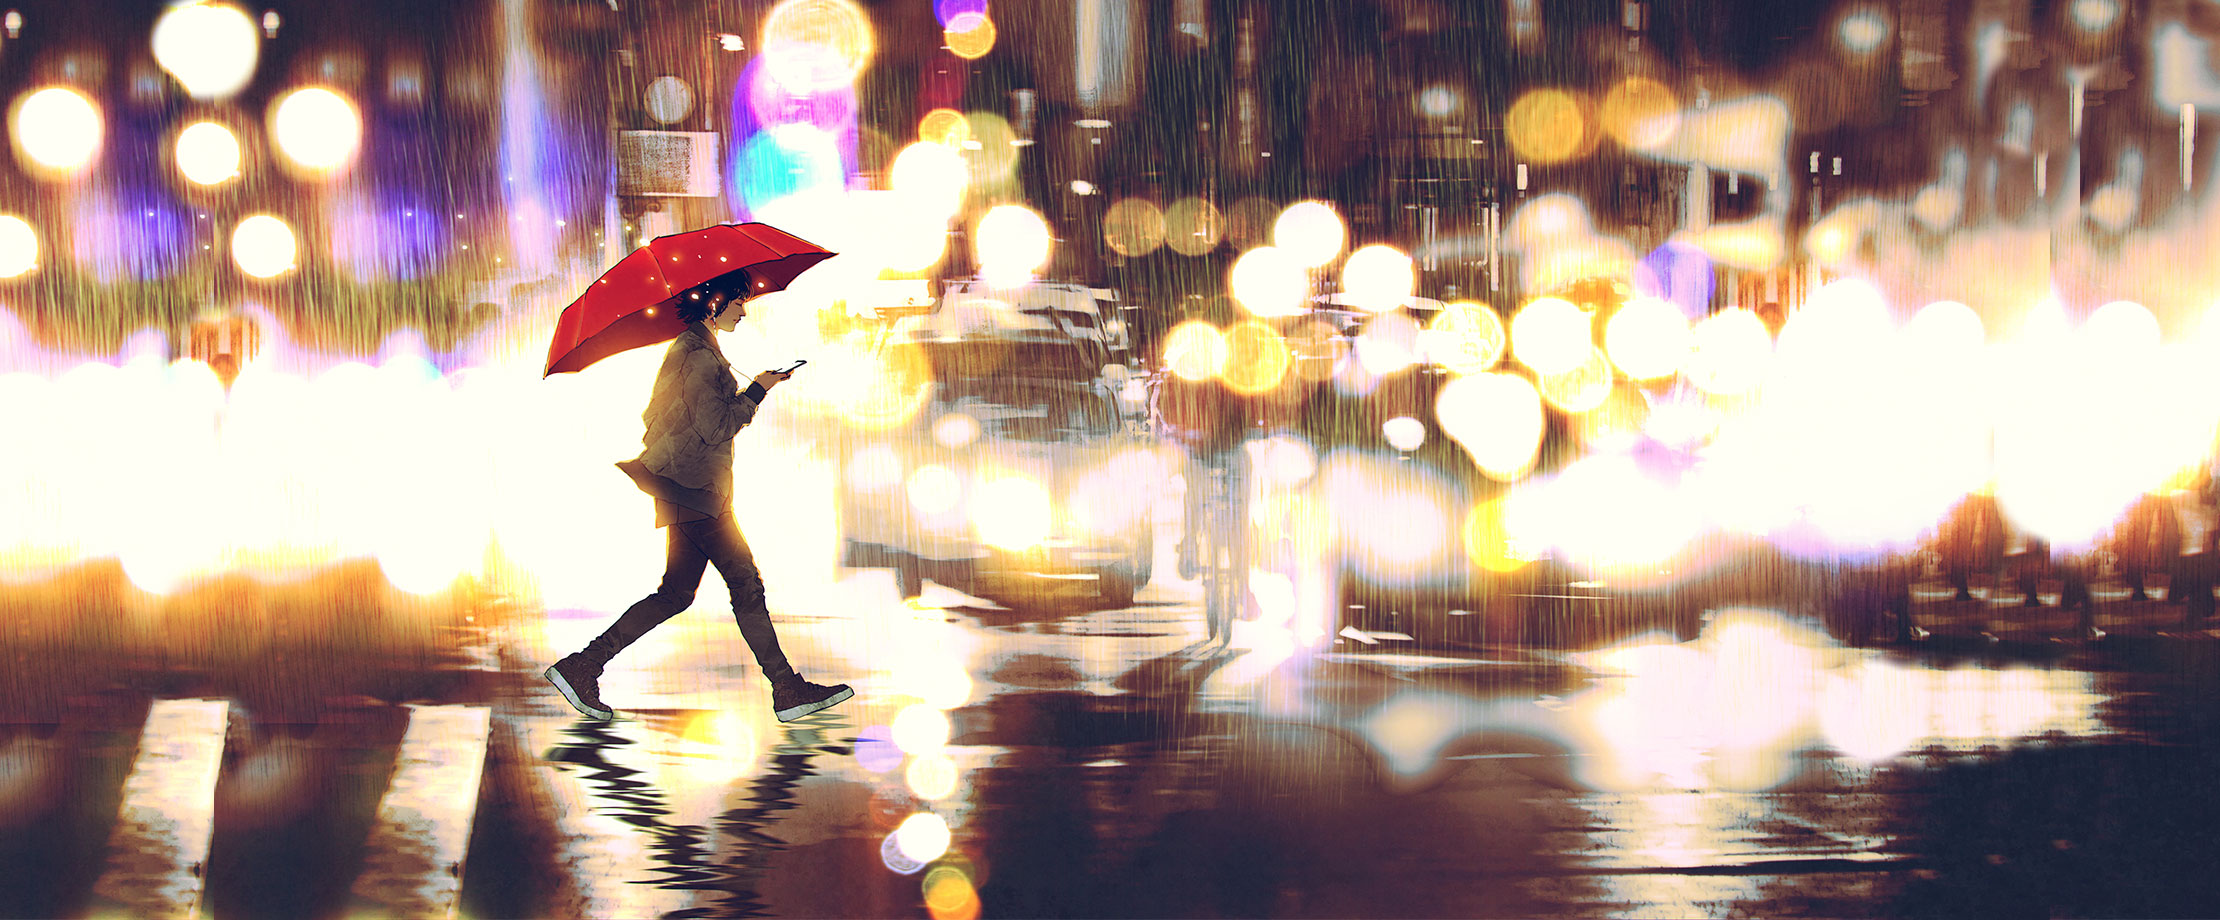 Eine junge Frau überquert bei Regen eine Straße. Sie hält einen Schirm und blickt auf ihr Hände. Im Hintergrund blenden die Lichter von Autos und Motorrädern.